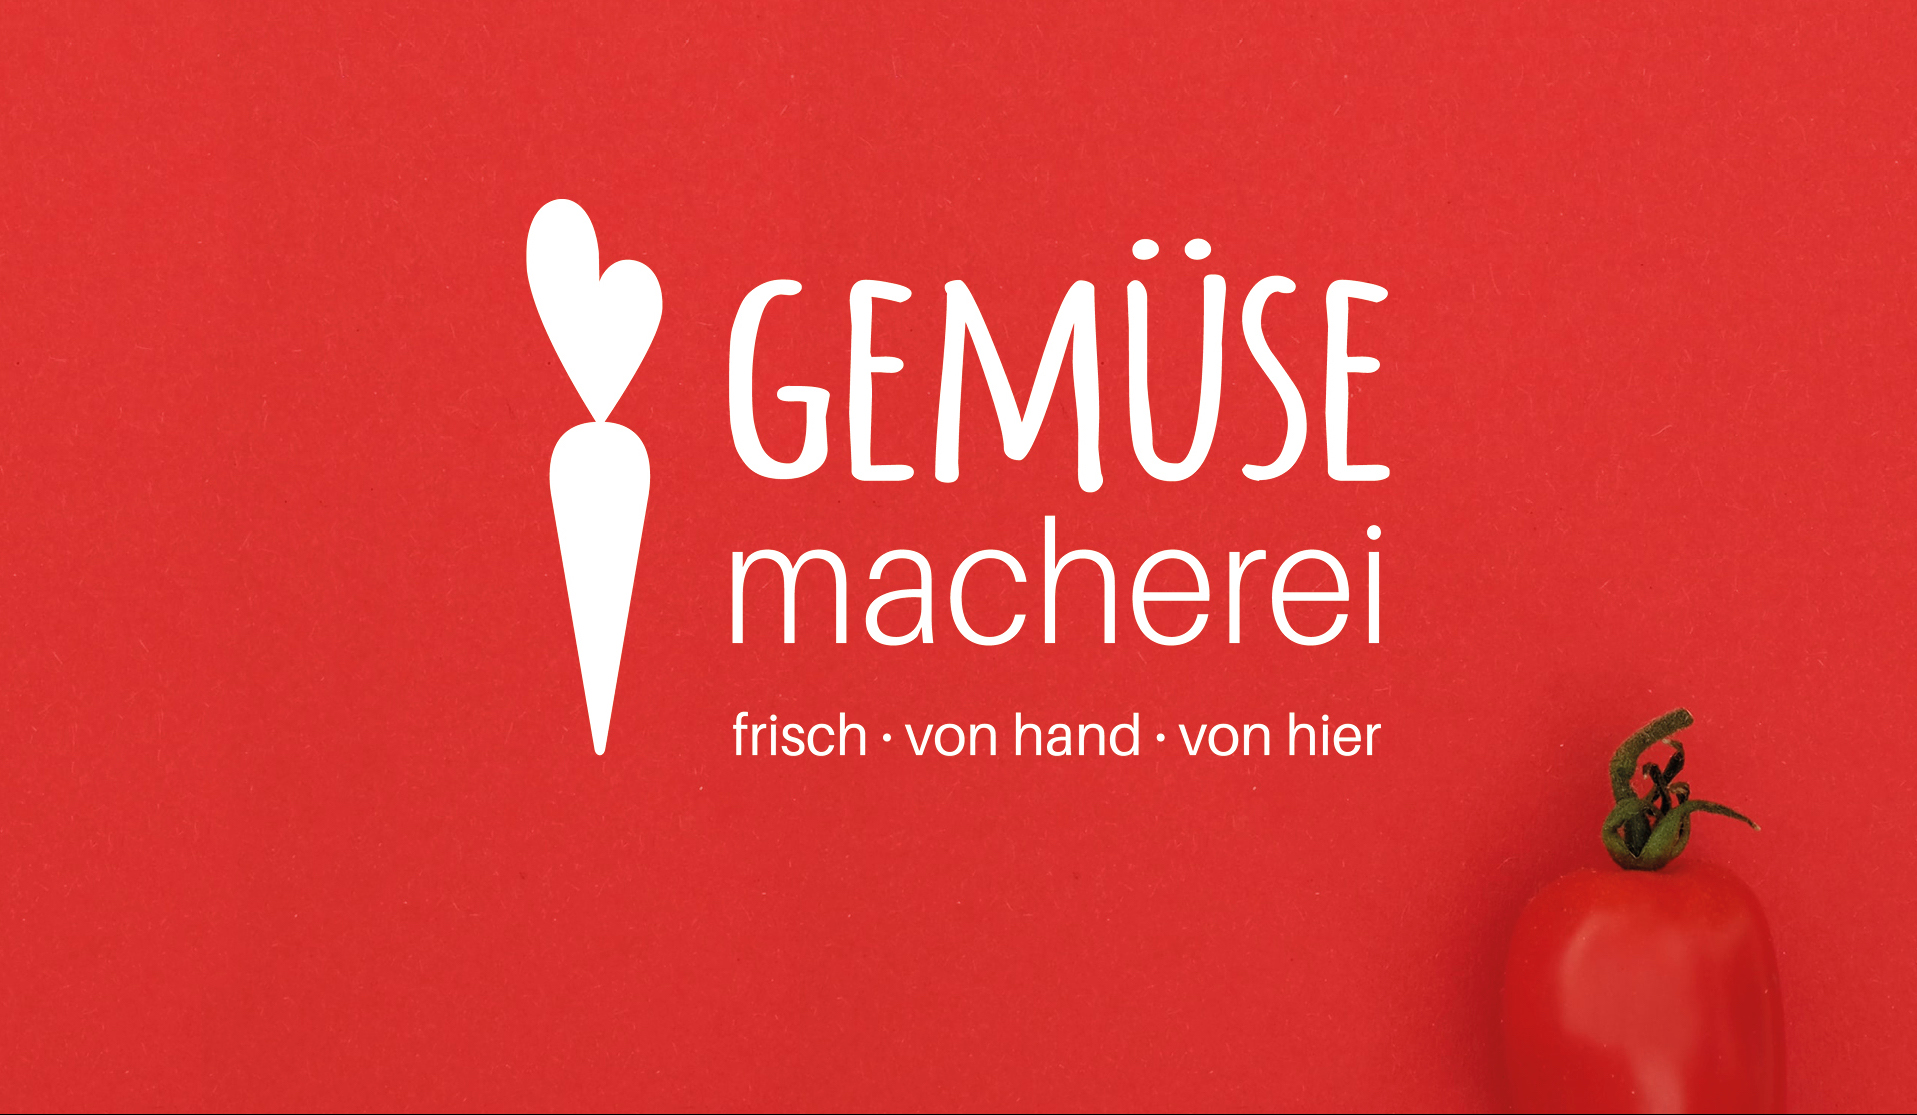 Gemuesemacherei Logo in Rot